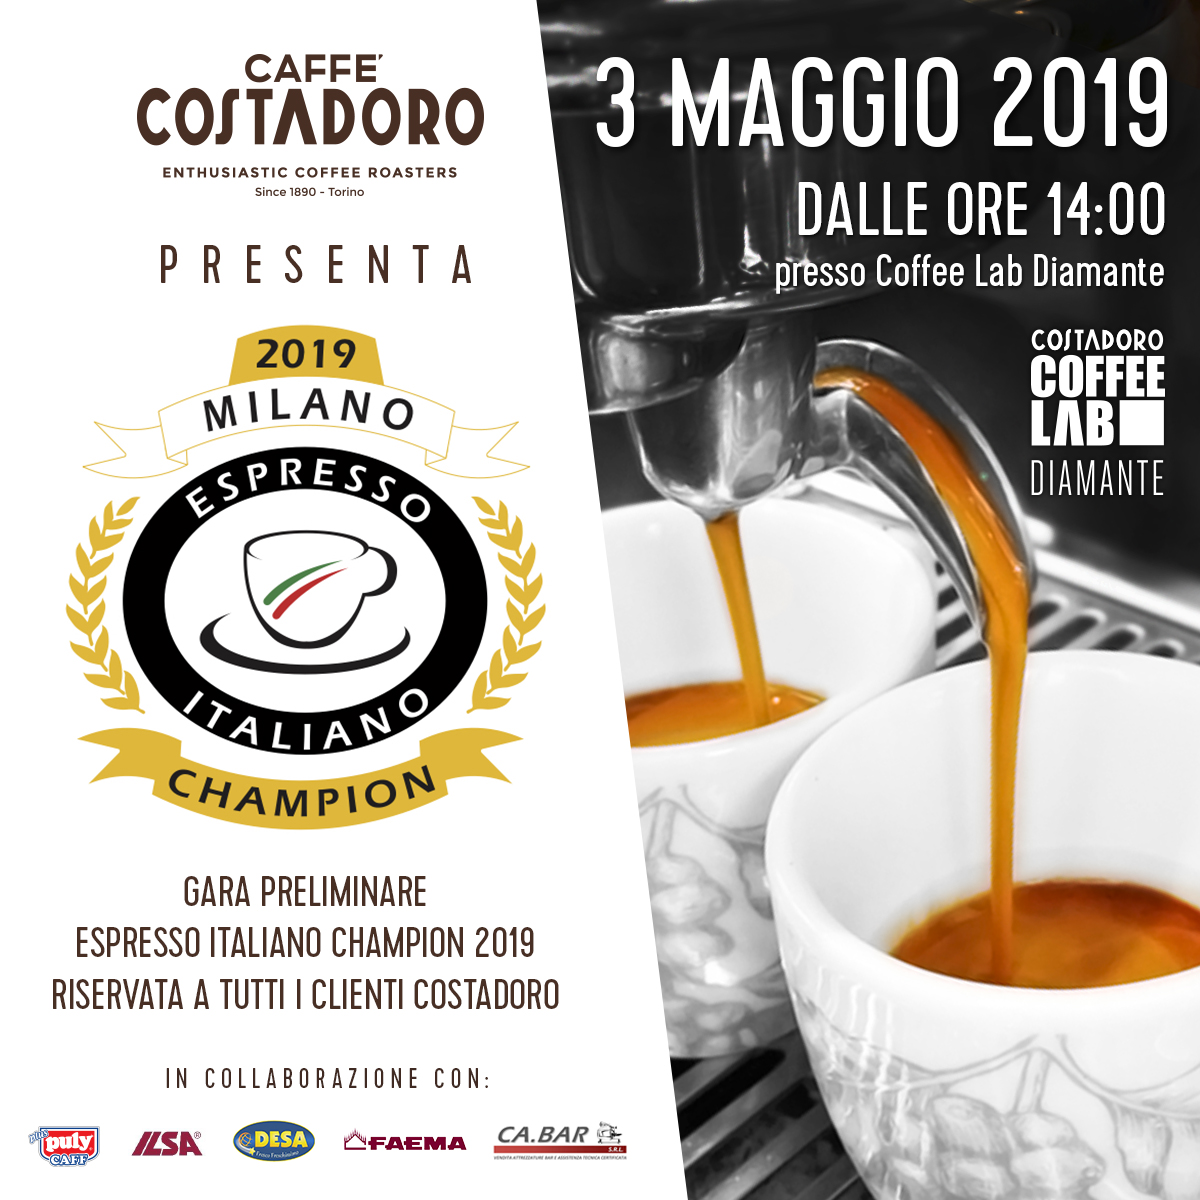 Espresso Italiano Champion